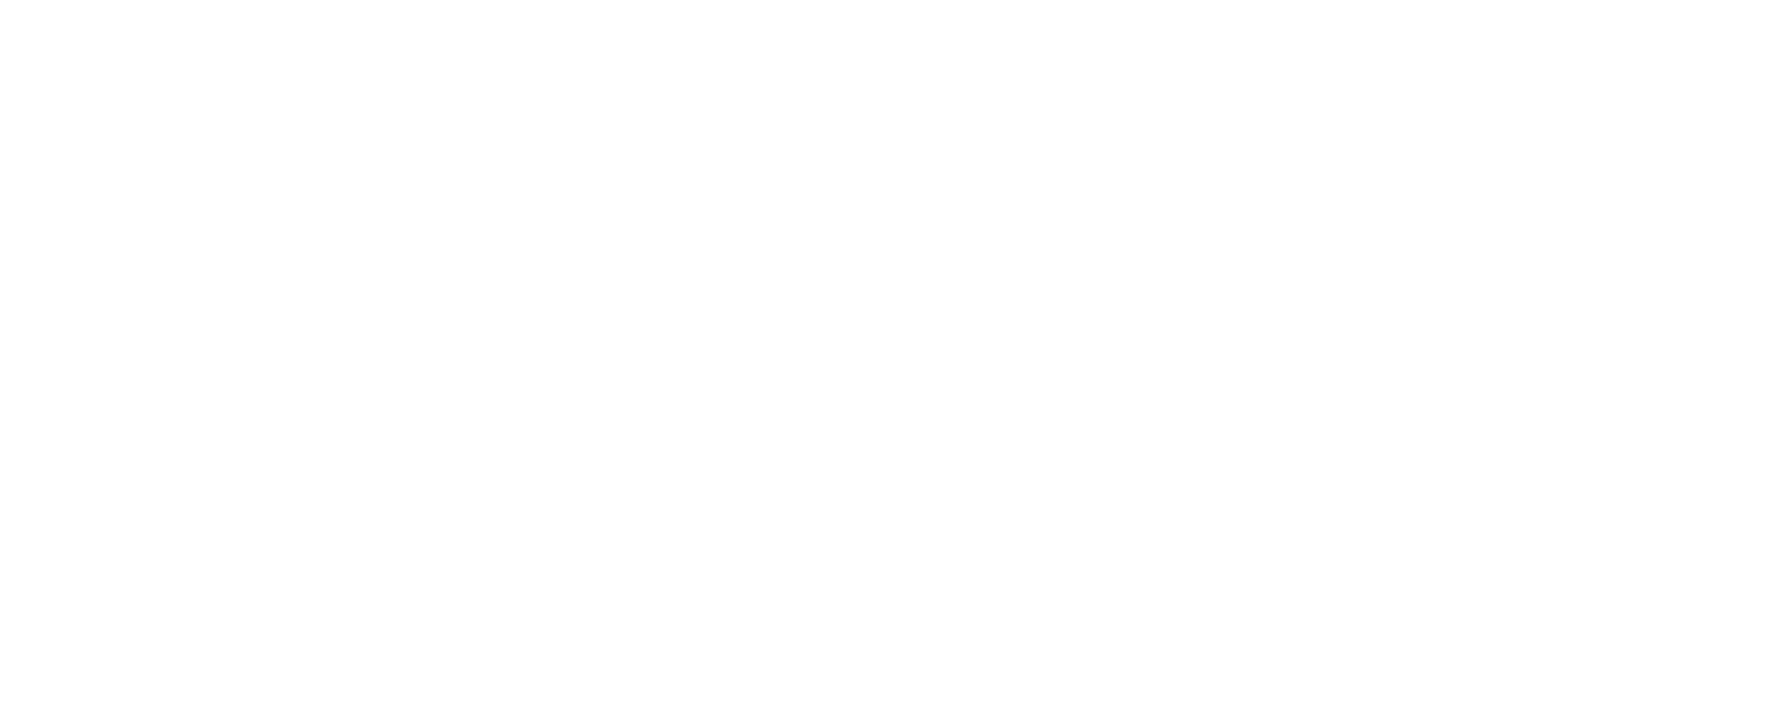 LAPSO logo in white